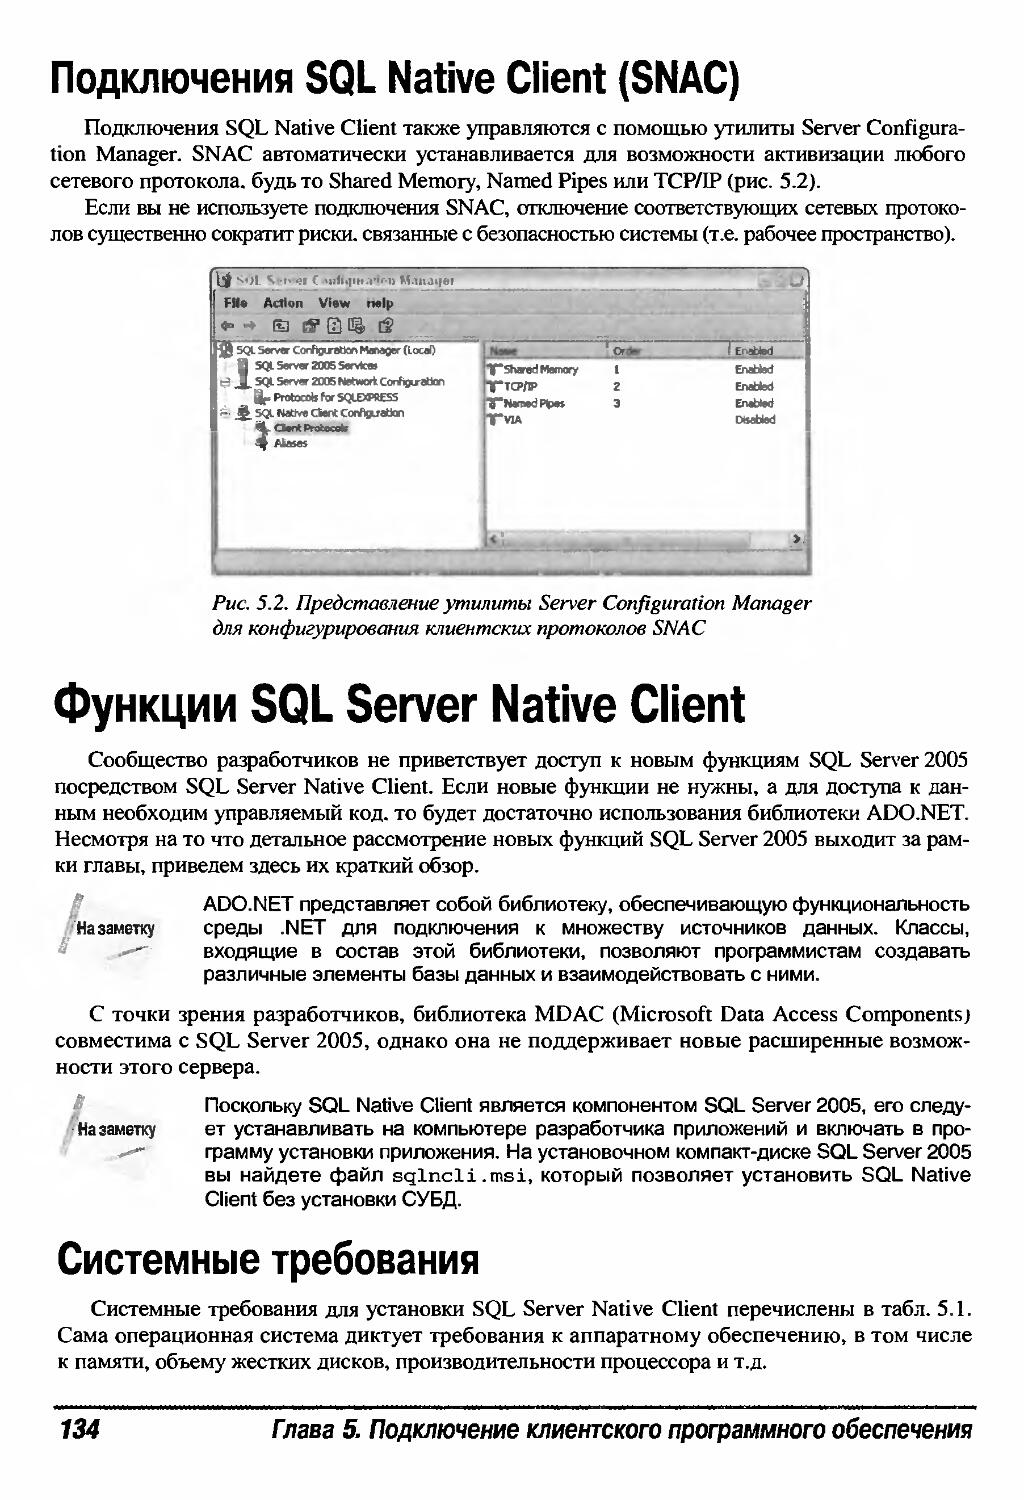 Функции SQL Server Native Client